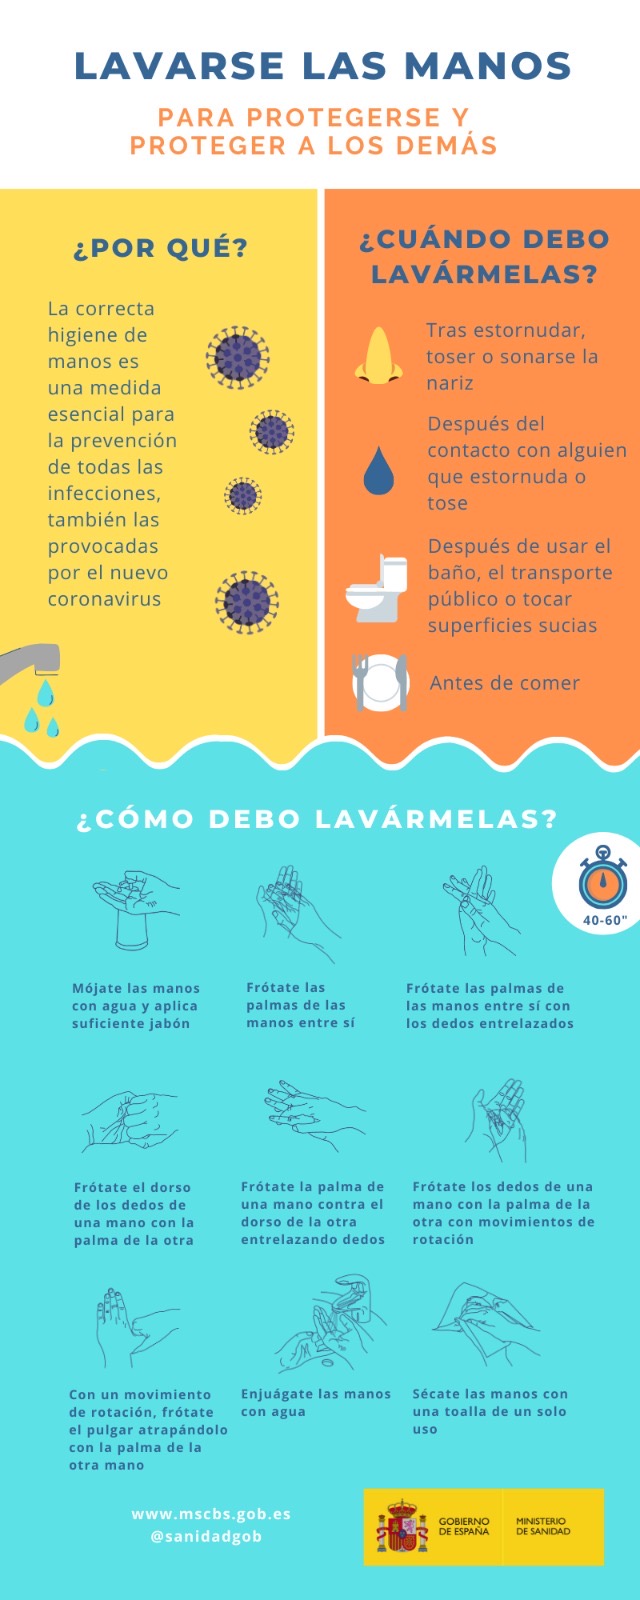 Lavarse las manos para protegerse de coronavirus